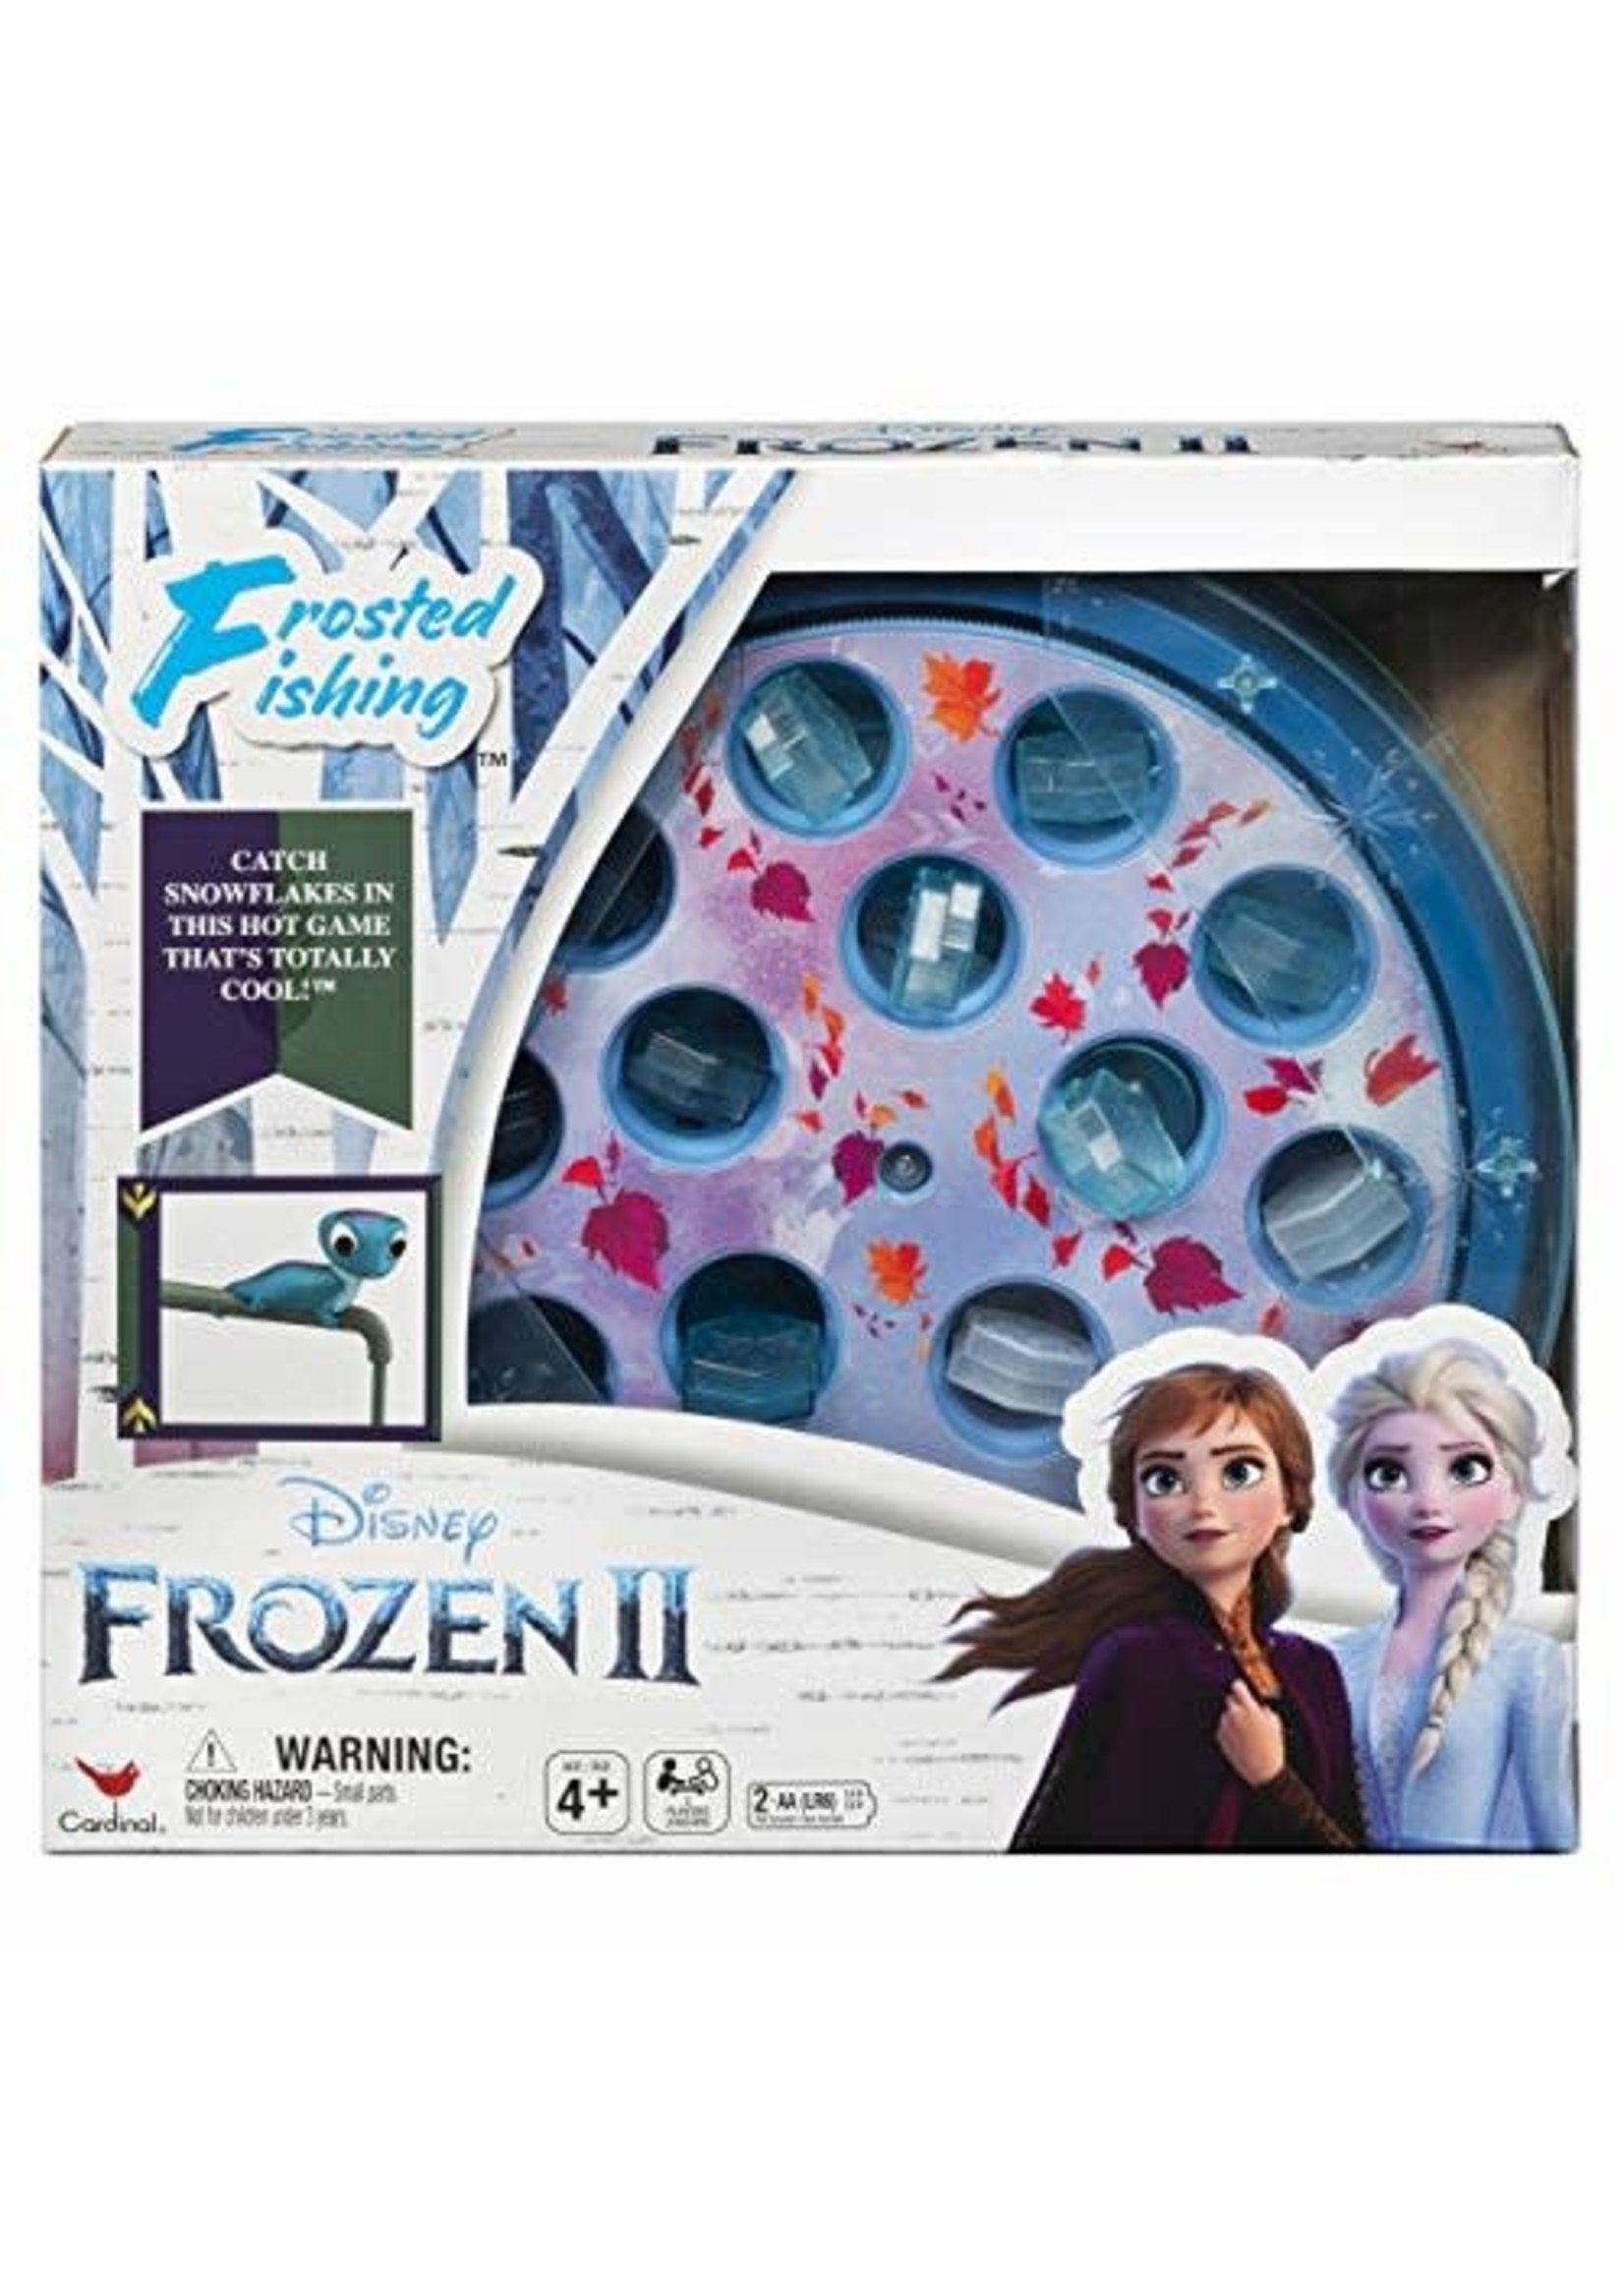 Disney Frozen 2 Frosted Fishing Board Game Open Box - D3 Surplus